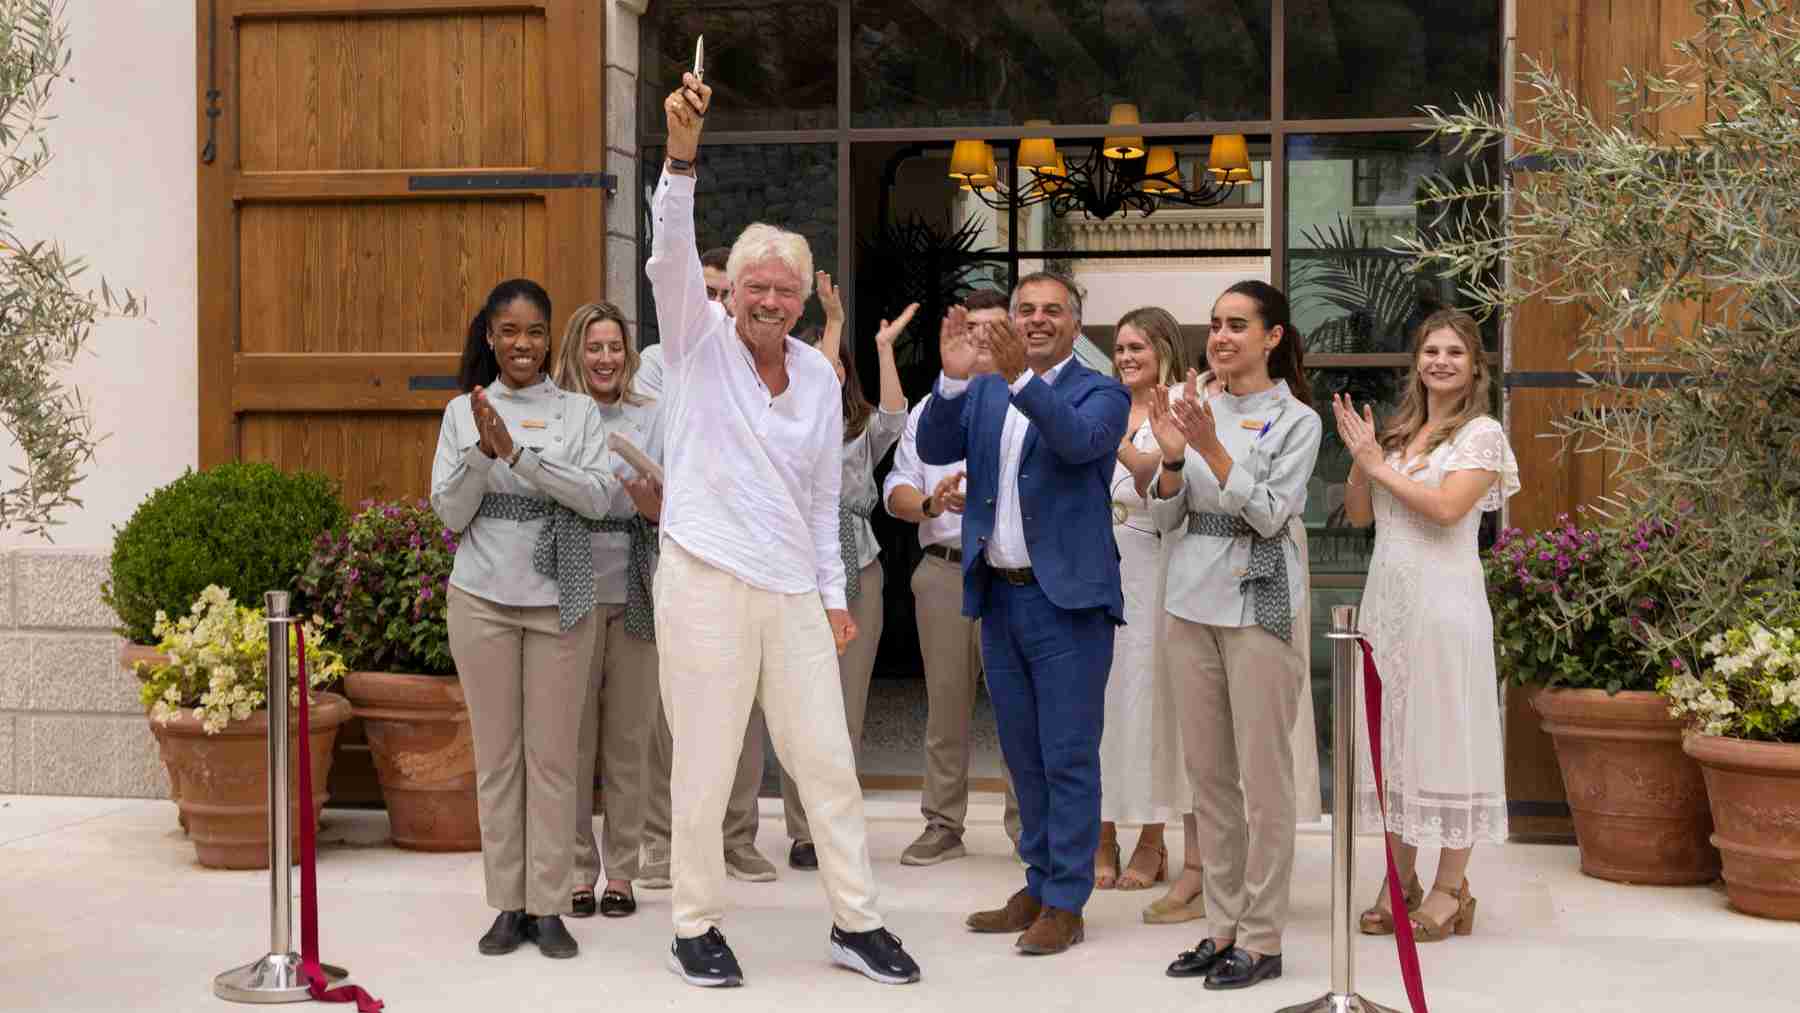 El magnate británico Richard Branson tras cortar la cinta de su nuevo hotel de lujo en Mallorca. EFE/CATI CLADERA